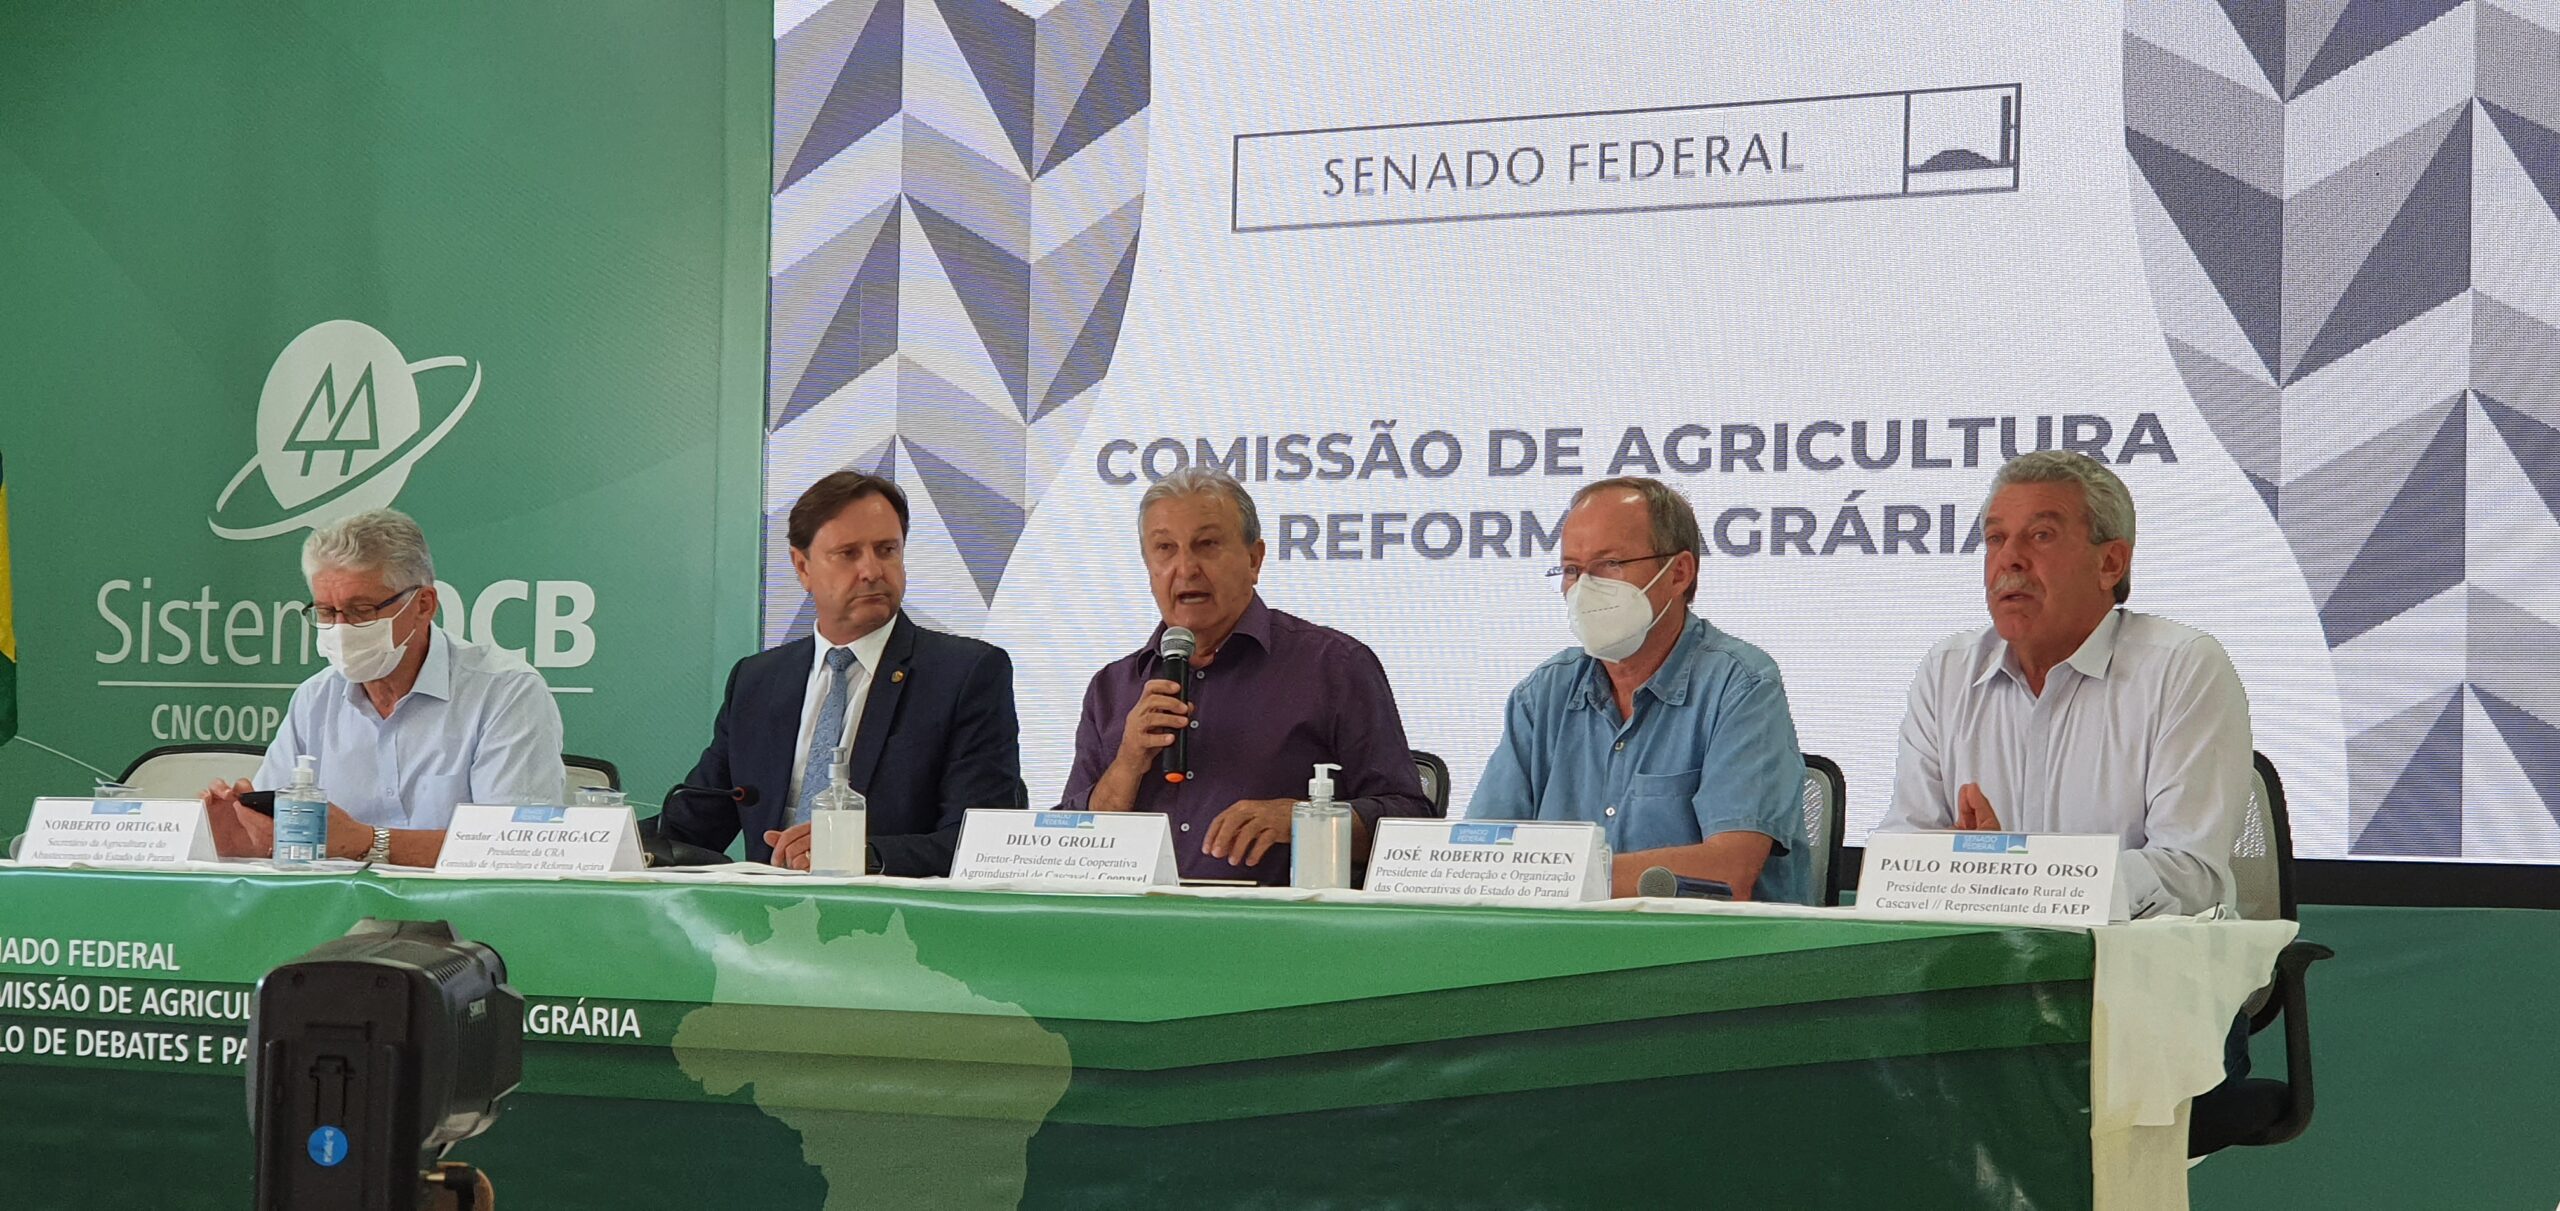 Senado: O Brasil preserva e produz com sustentabilidade, afirma Gurgacz